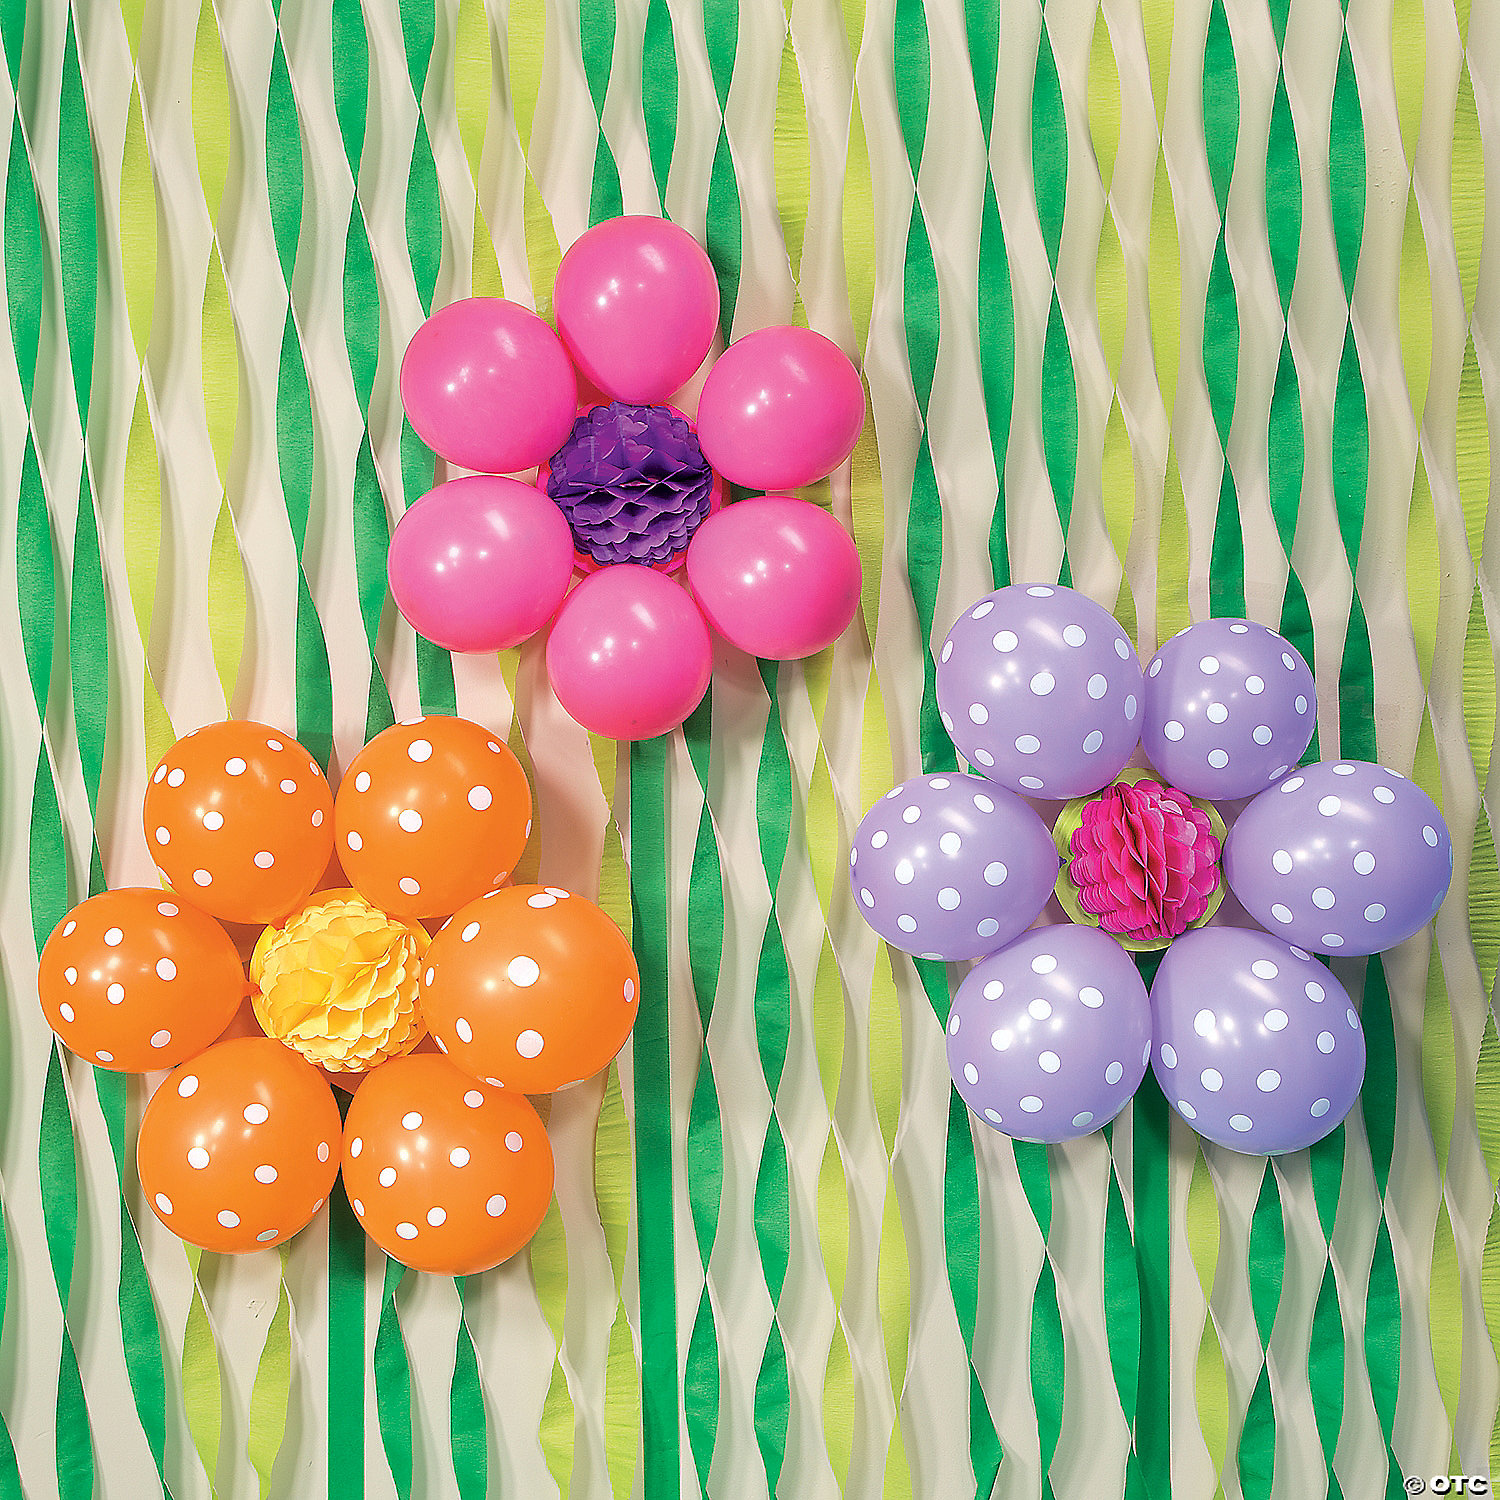 DIY Balloon Flowers Idea